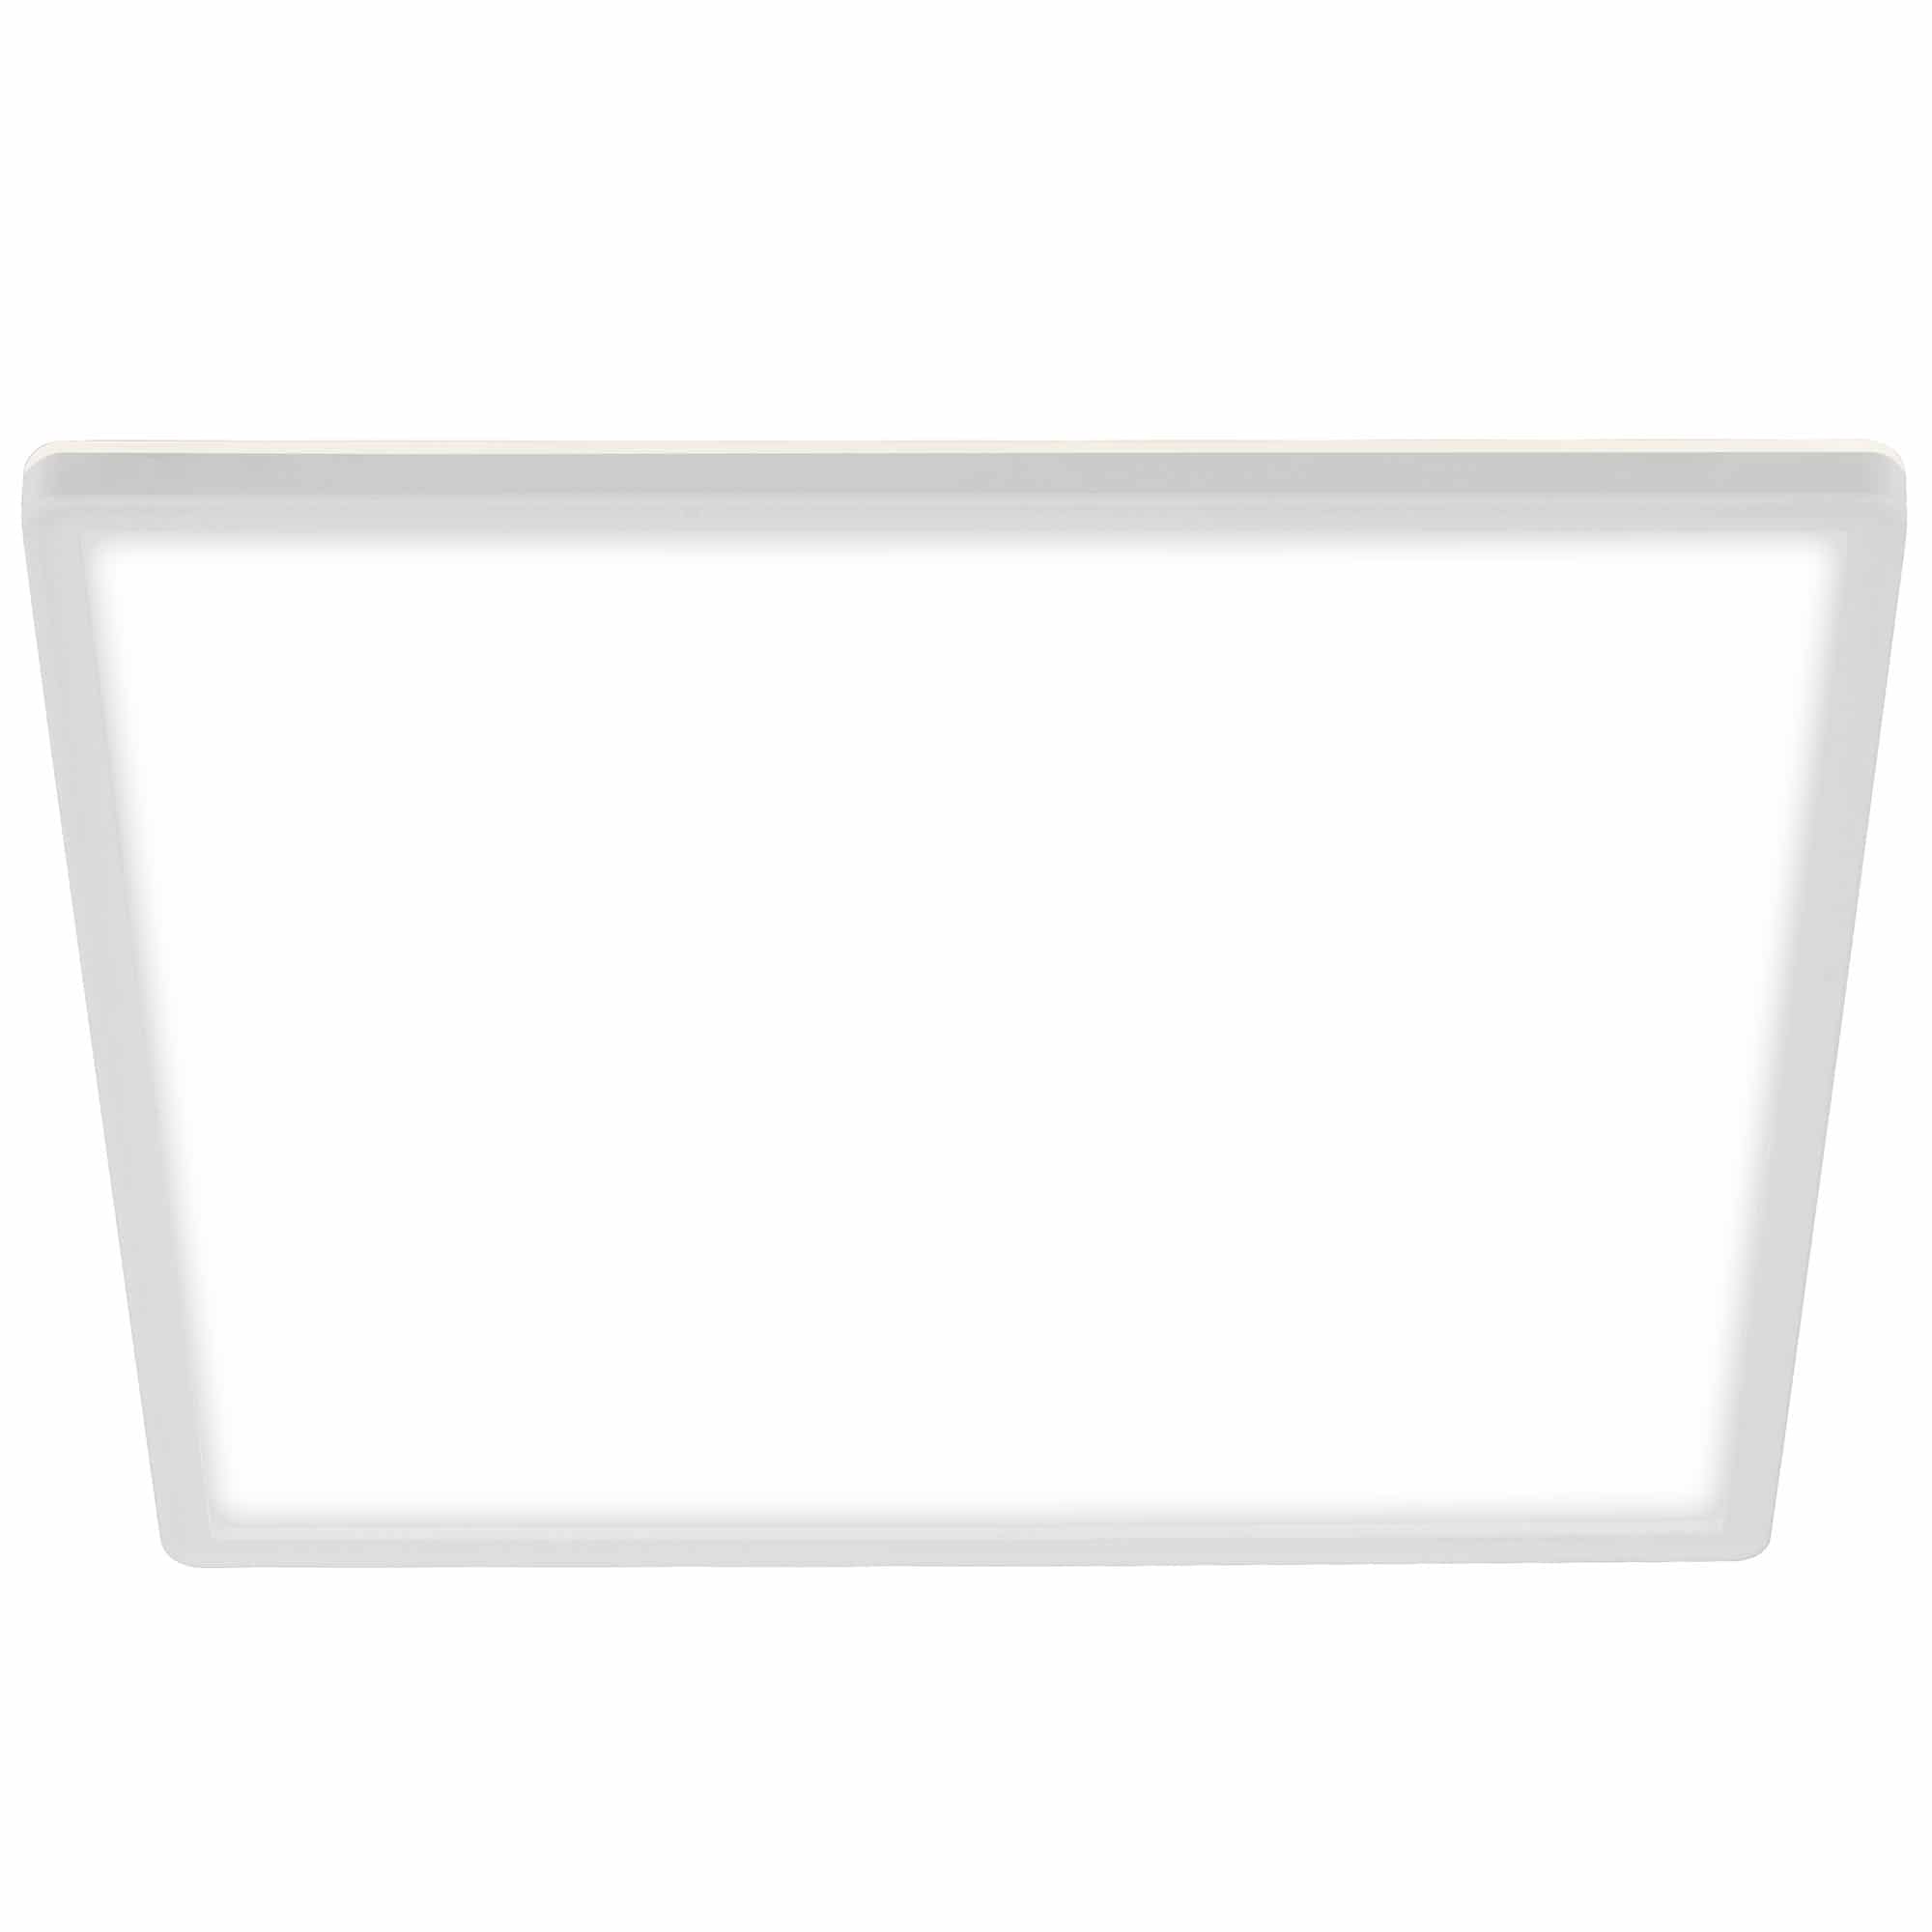 Briloner Slim LED Deckenleuchte, Backlight, Flach, Eckig, 42x42cm, Weiß